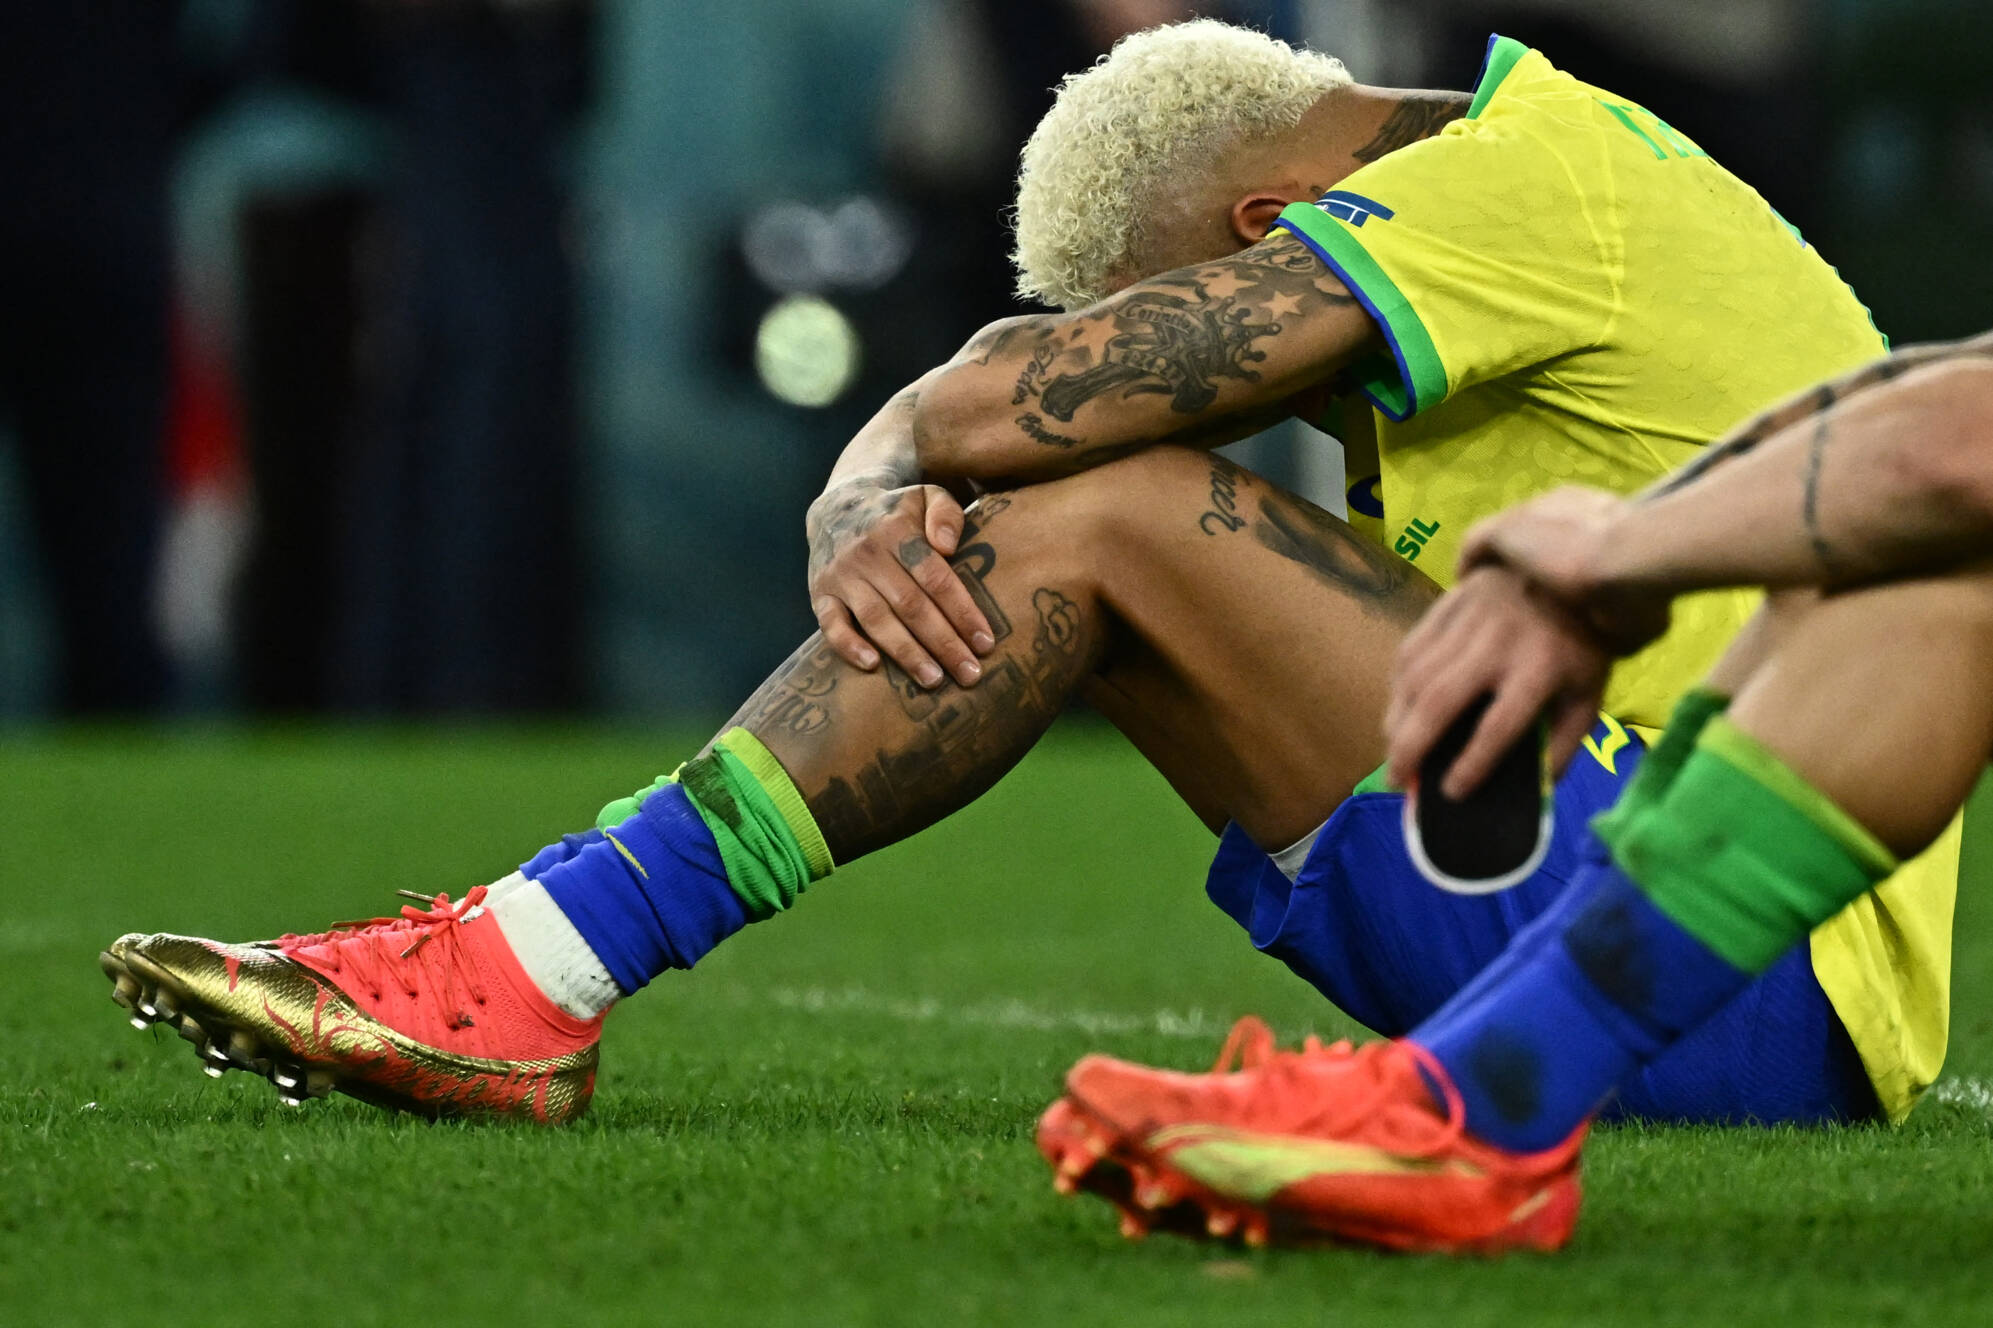 Brasil está fora da Copa do Mundo 2022 - Seleção perde, nos